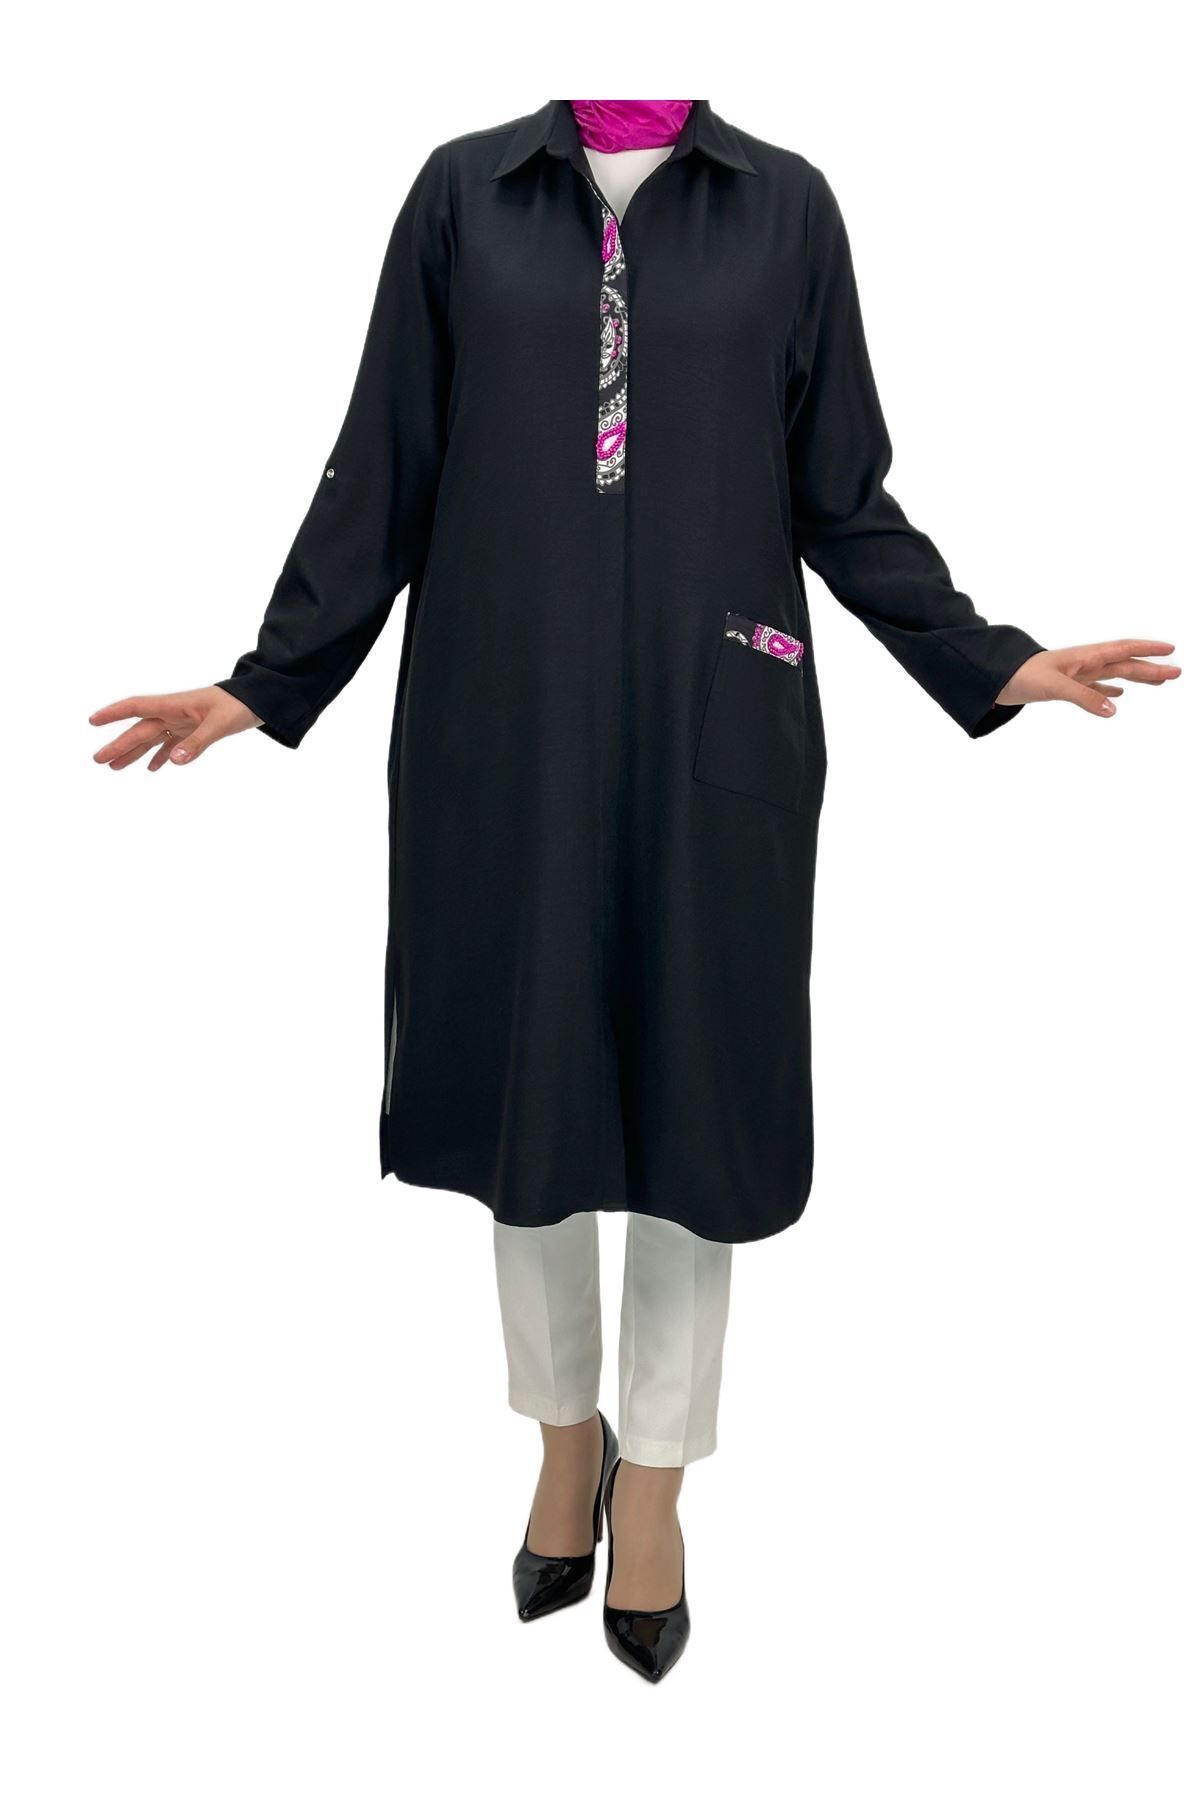 ottoman wear OTW60672 Büyük Beden Tunik Siyah